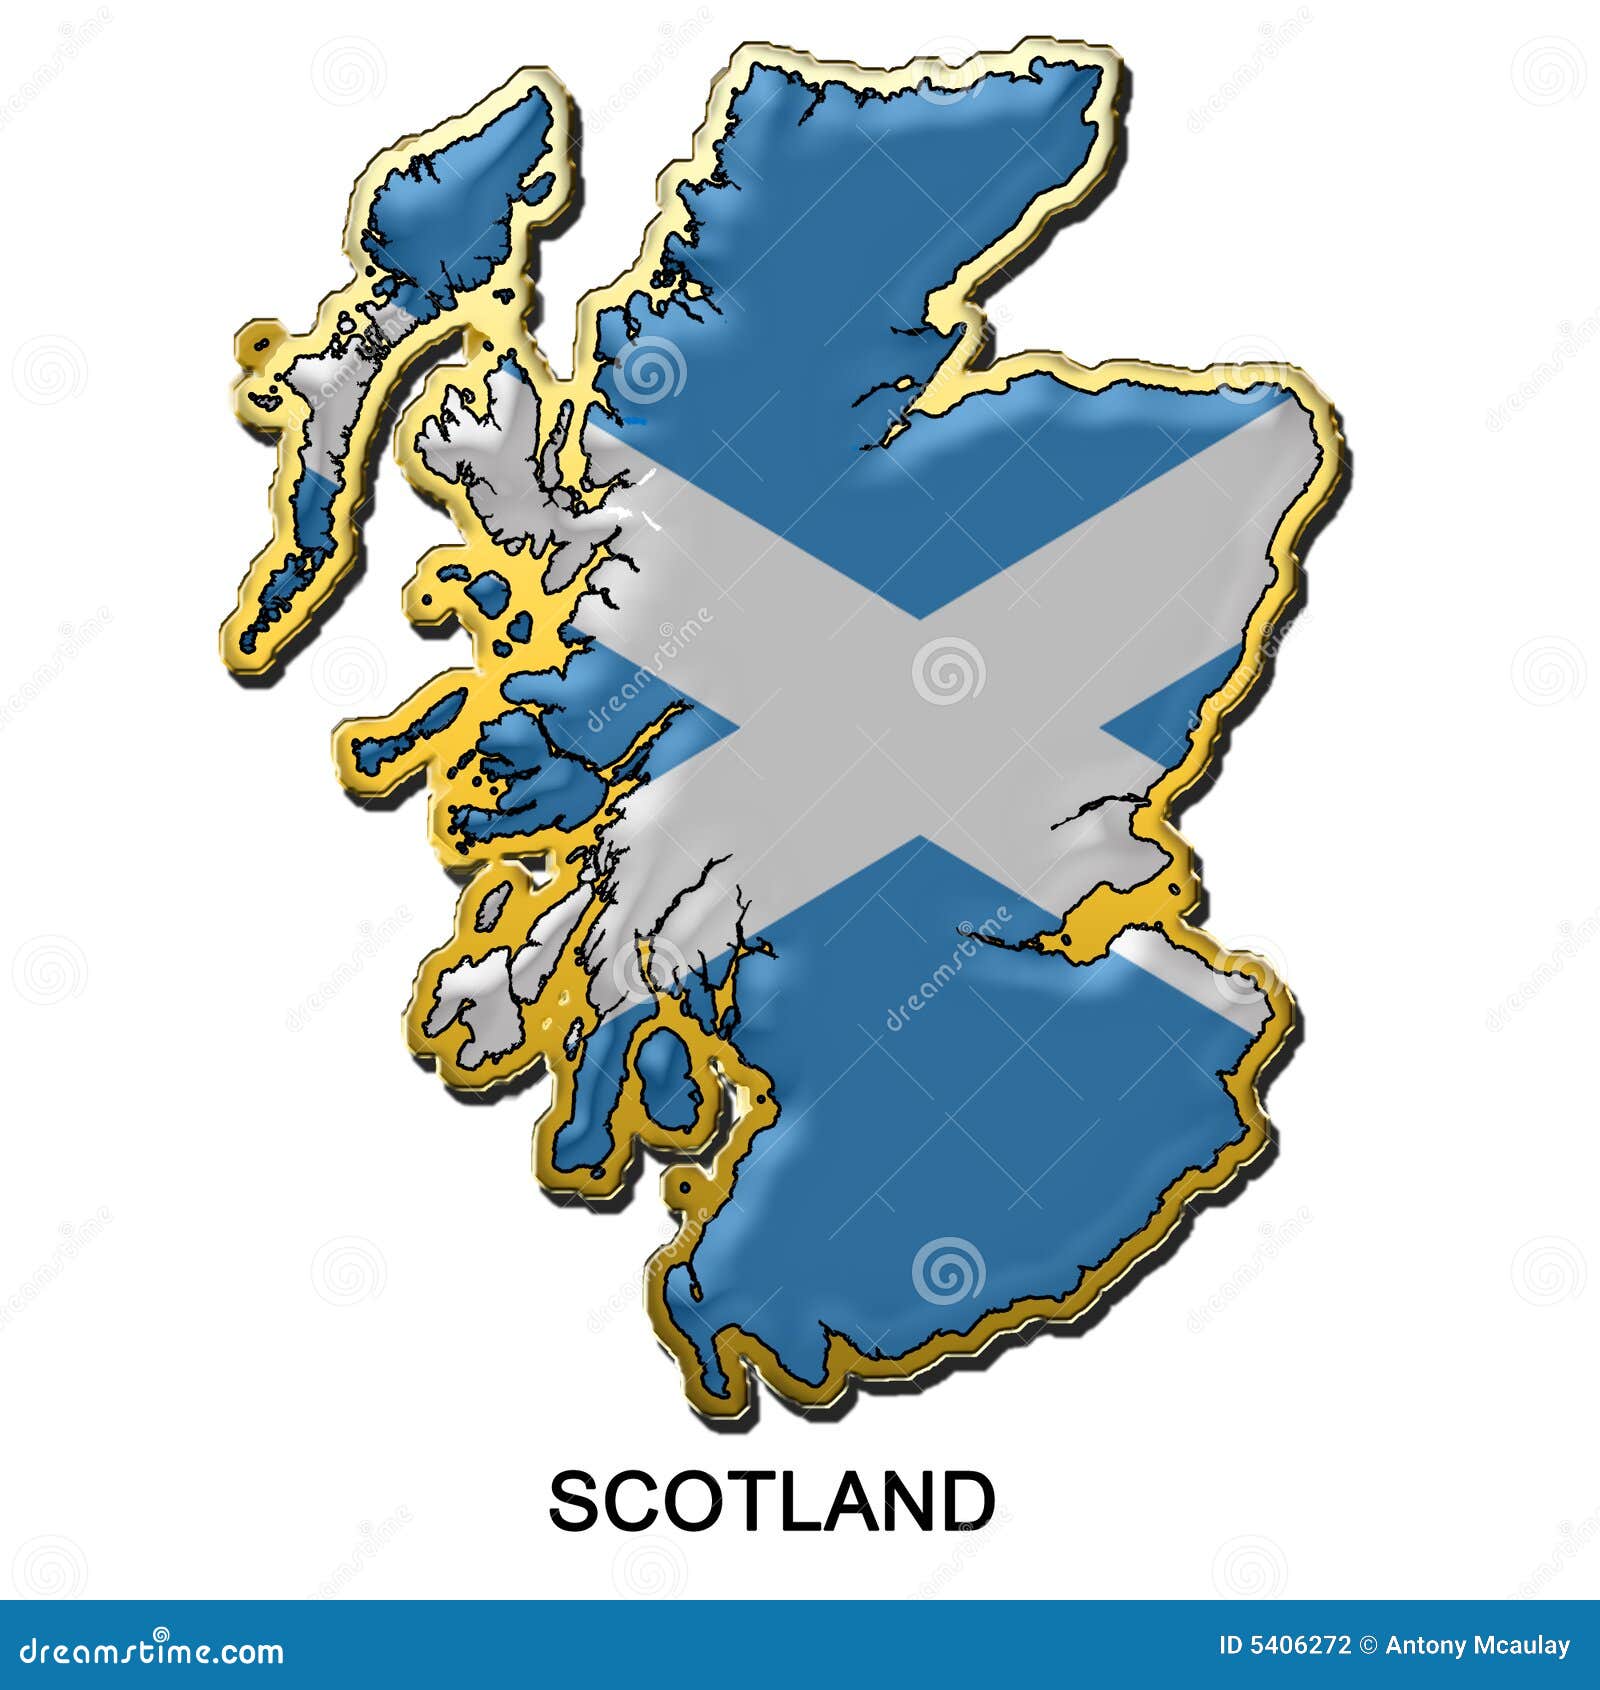 Emblemmetallstift scotland. Förse med märke stil för stiftet för flaggaöversiktsmetall formad scotland